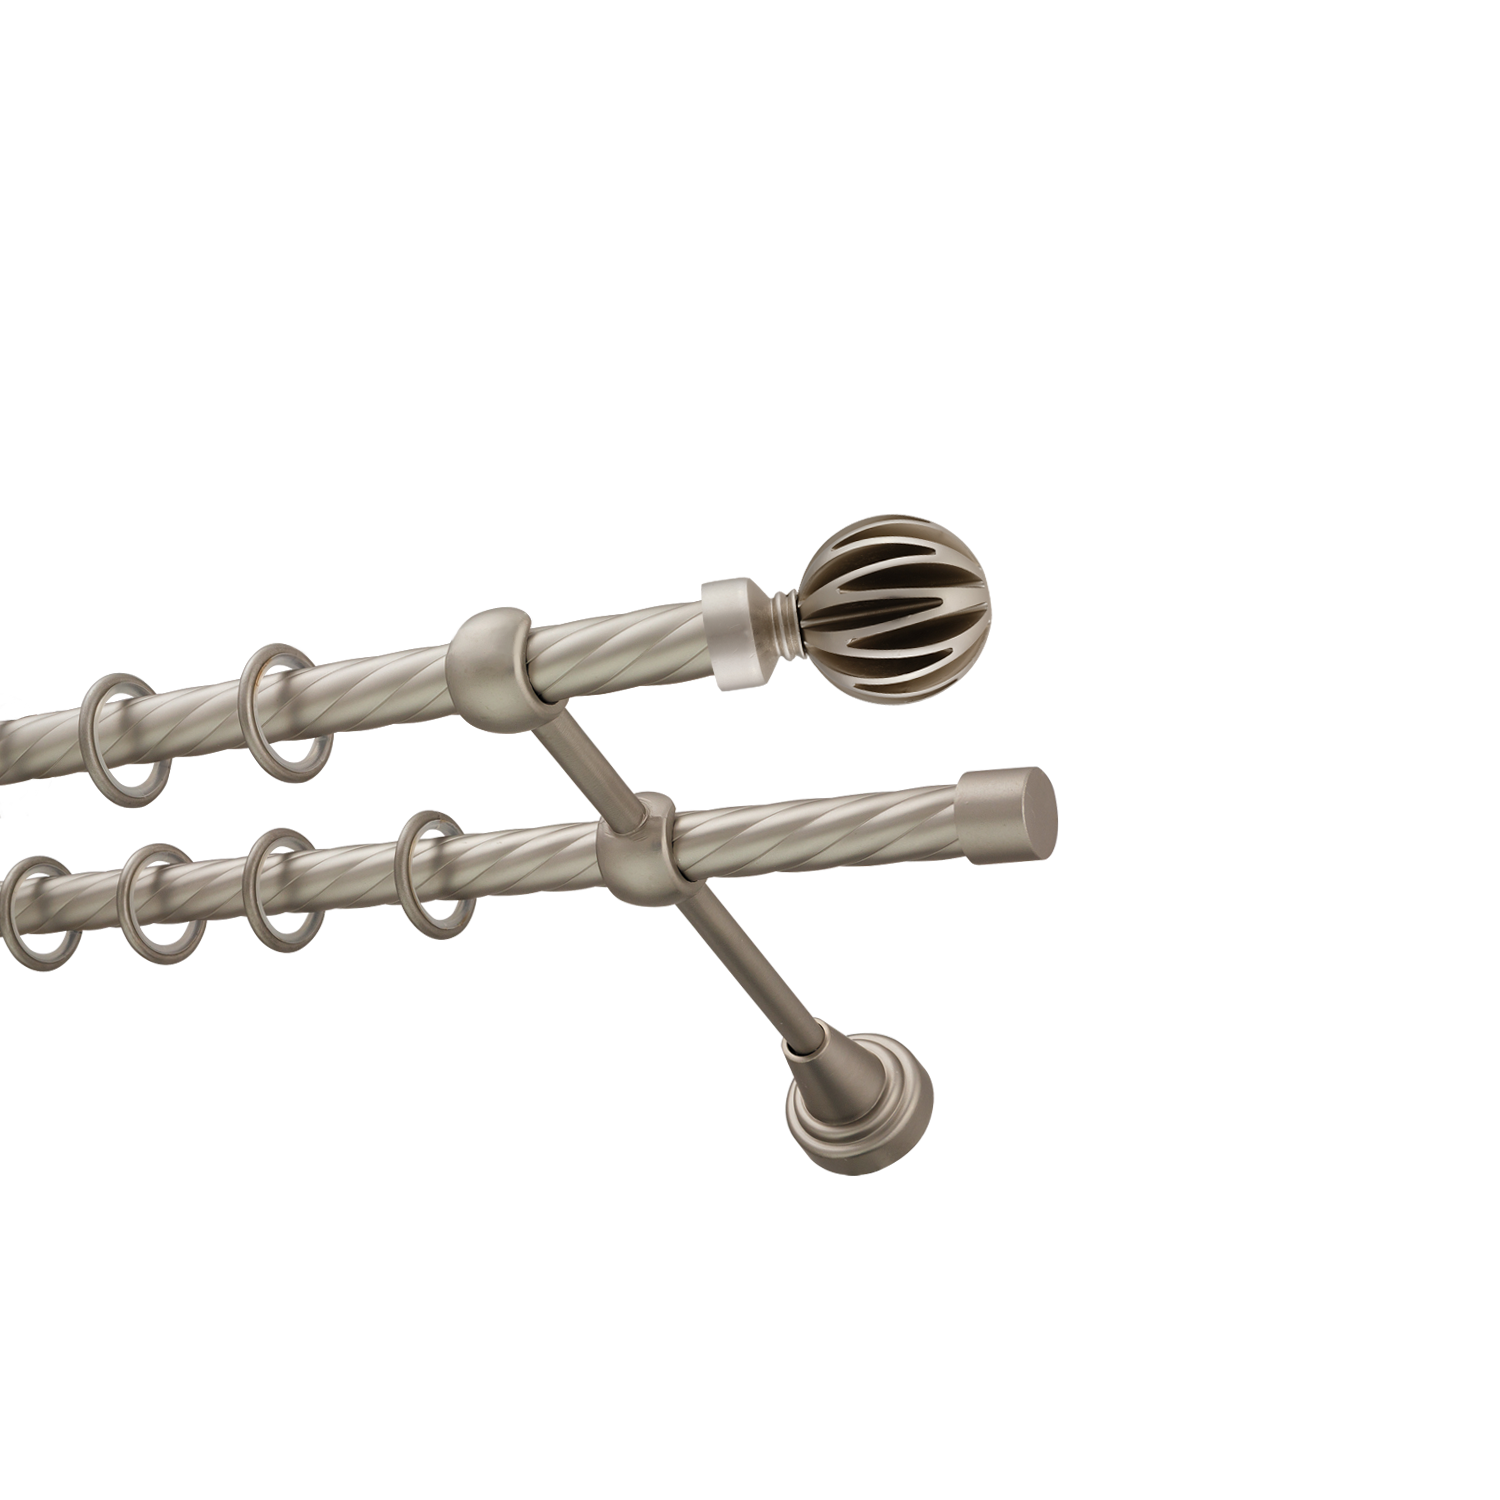 Металлический карниз для штор Шафран, двухрядный 16/16 мм, сталь, витая штанга, длина 240 см - фото Wikidecor.ru